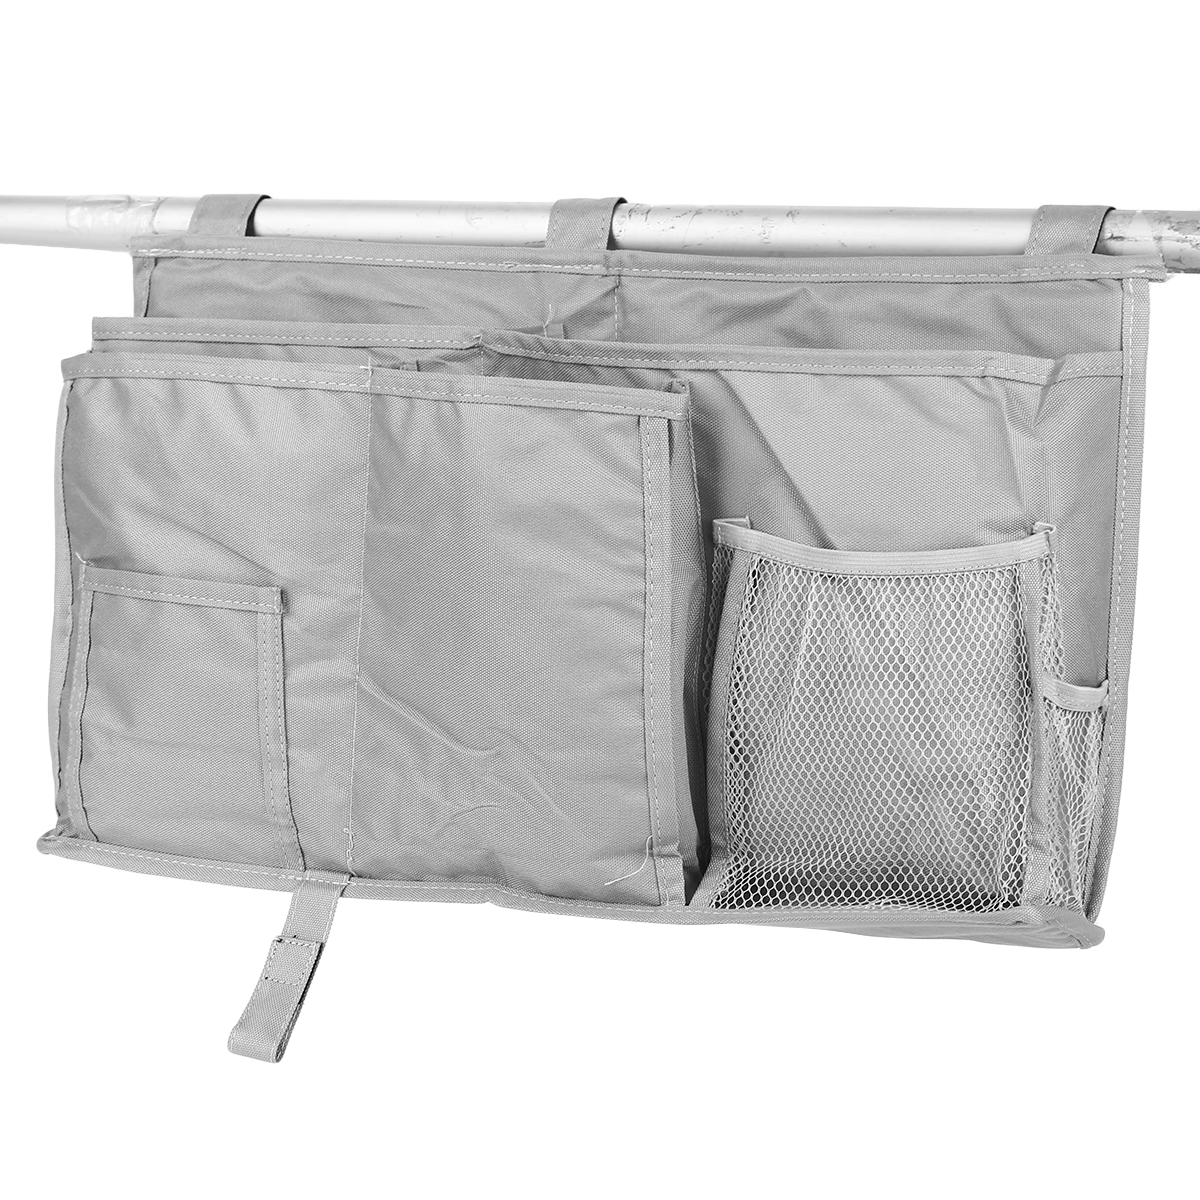 Bedside Oxford Cloth Storage Bag Baby Bed Hanging Bag Large Capacity Storage Bag Holder Students Dormitory—3